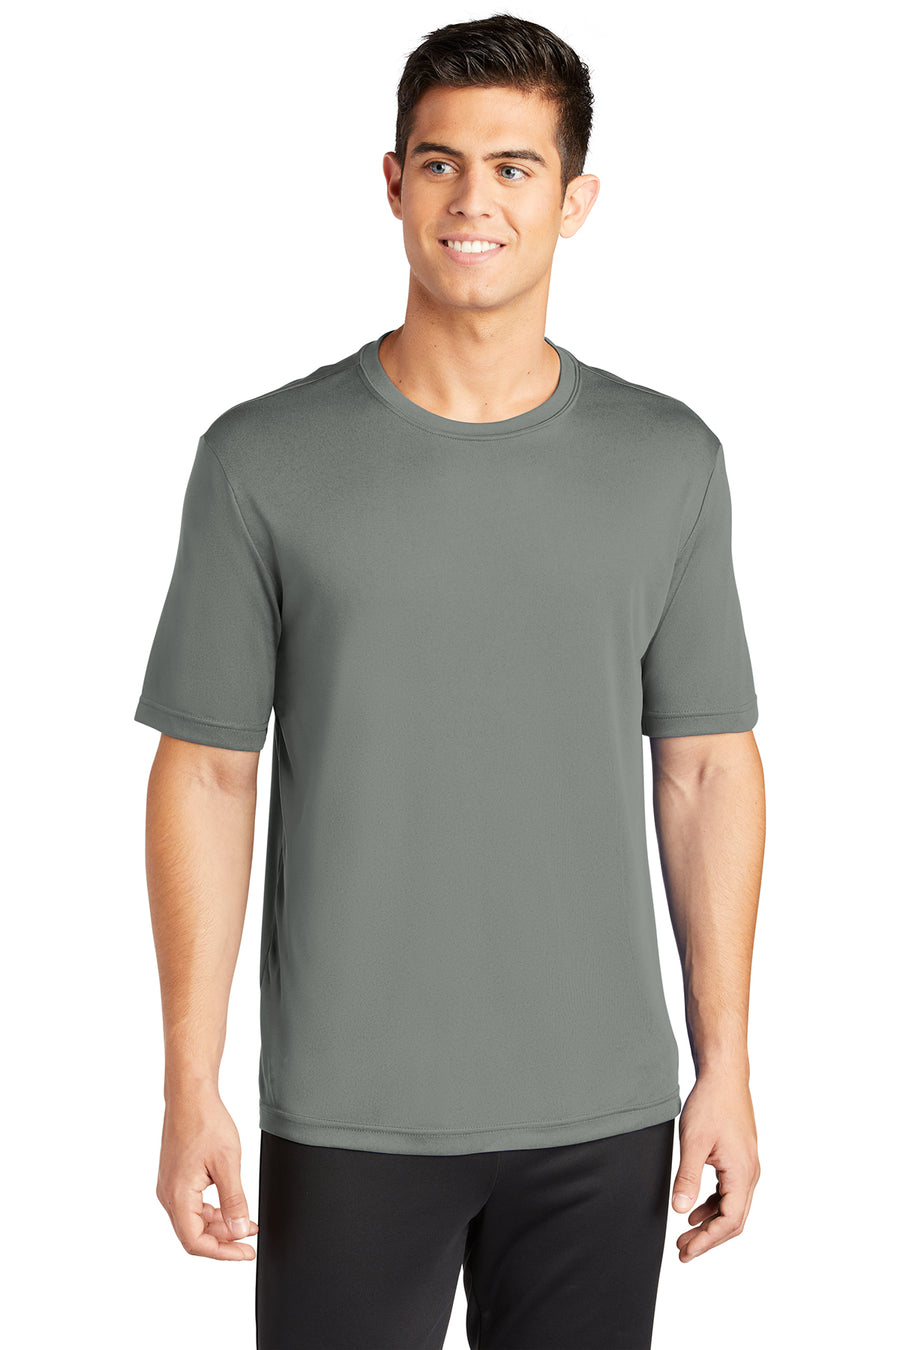 Men's 100% Polyester Moisture-Wicking T-Shirt (Short Sleeve)